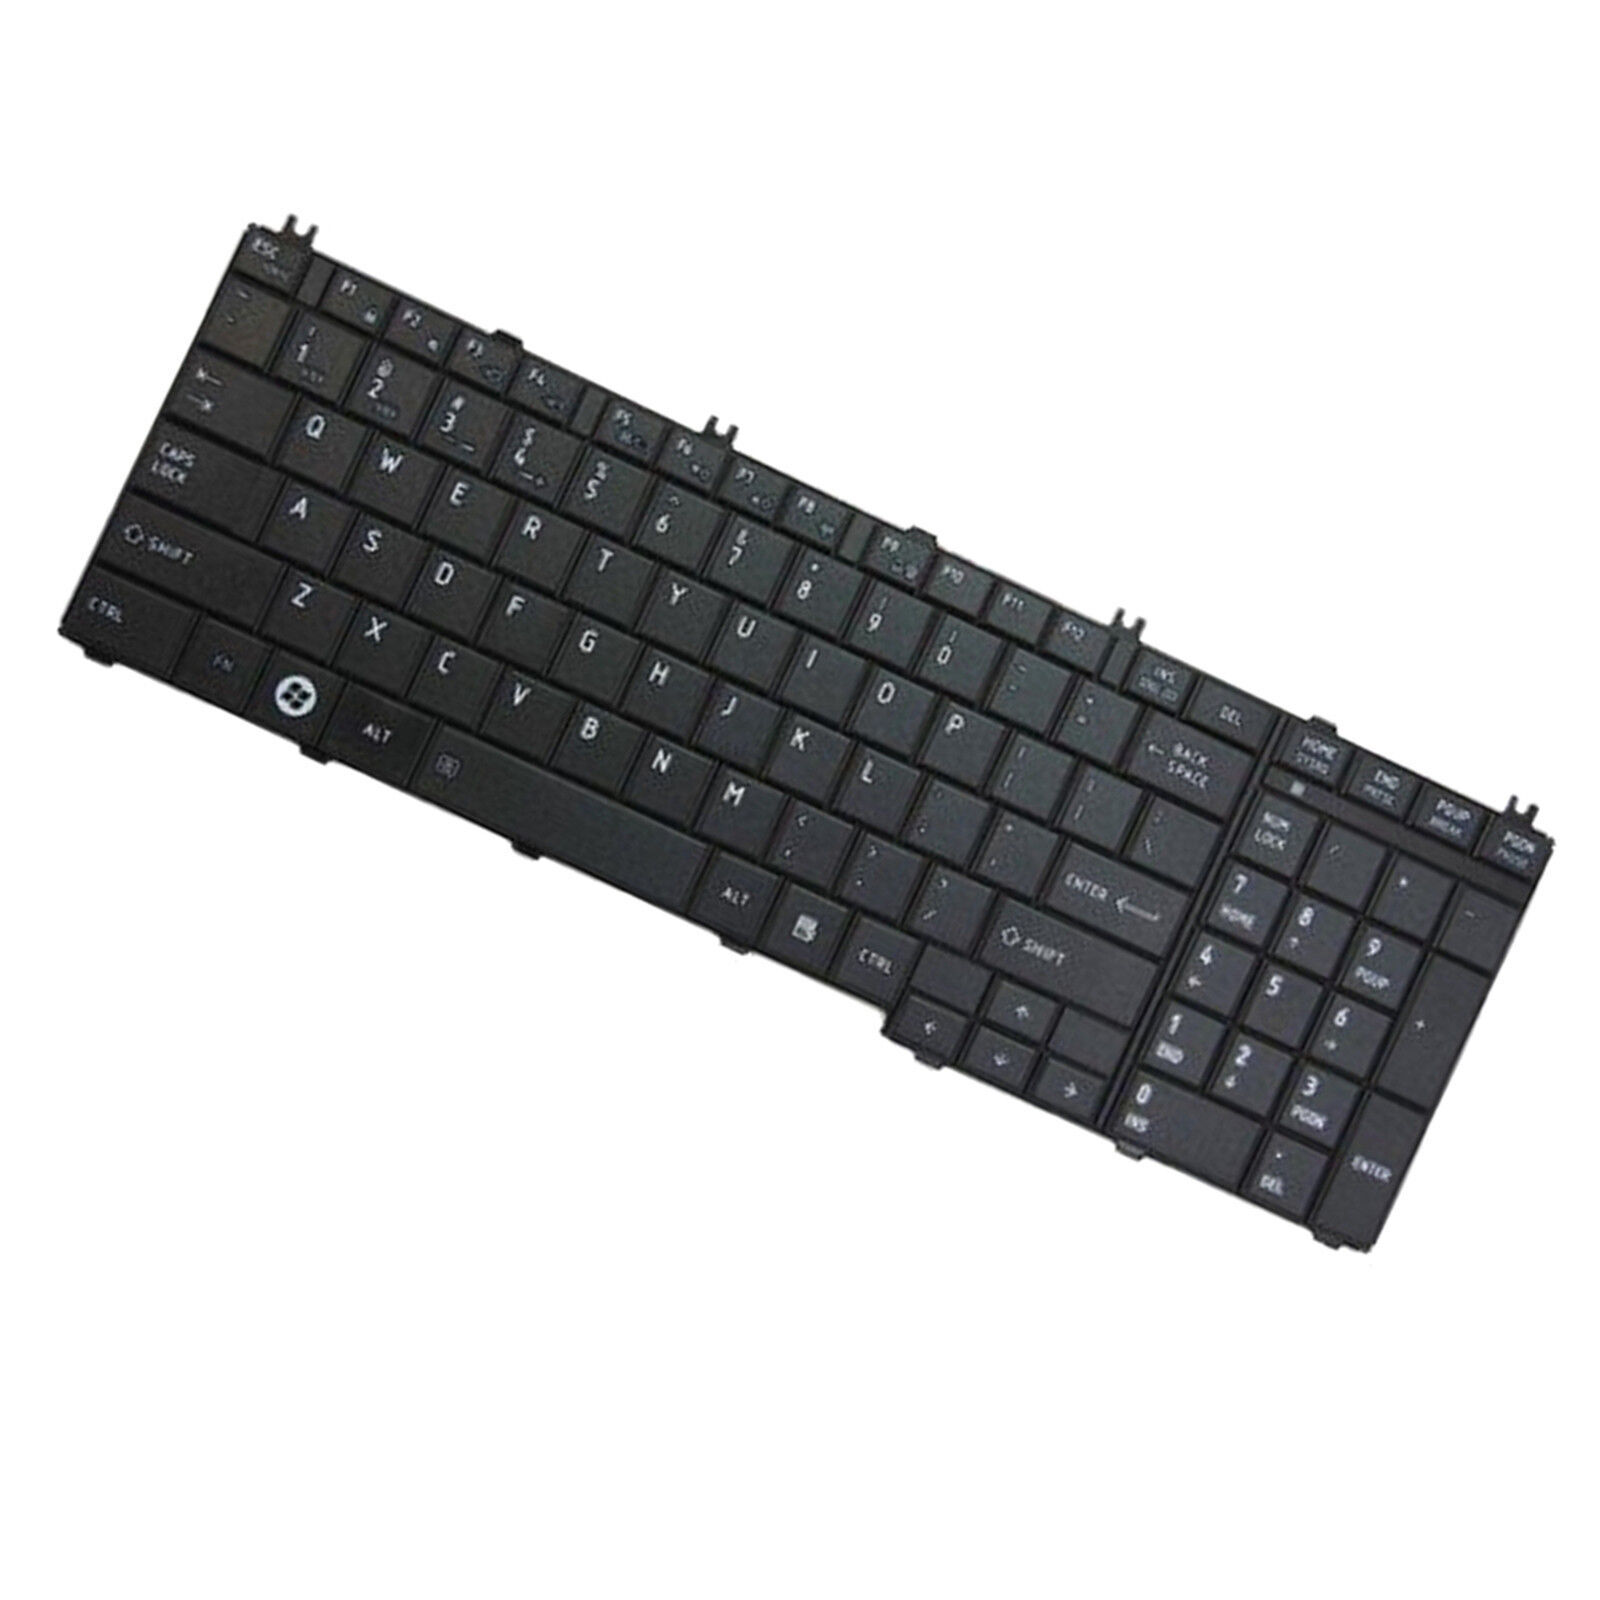 HQRP US Keyboard for Toshiba L755-S5282, L775D-S7304, L775D-S7305, L775D-S7330